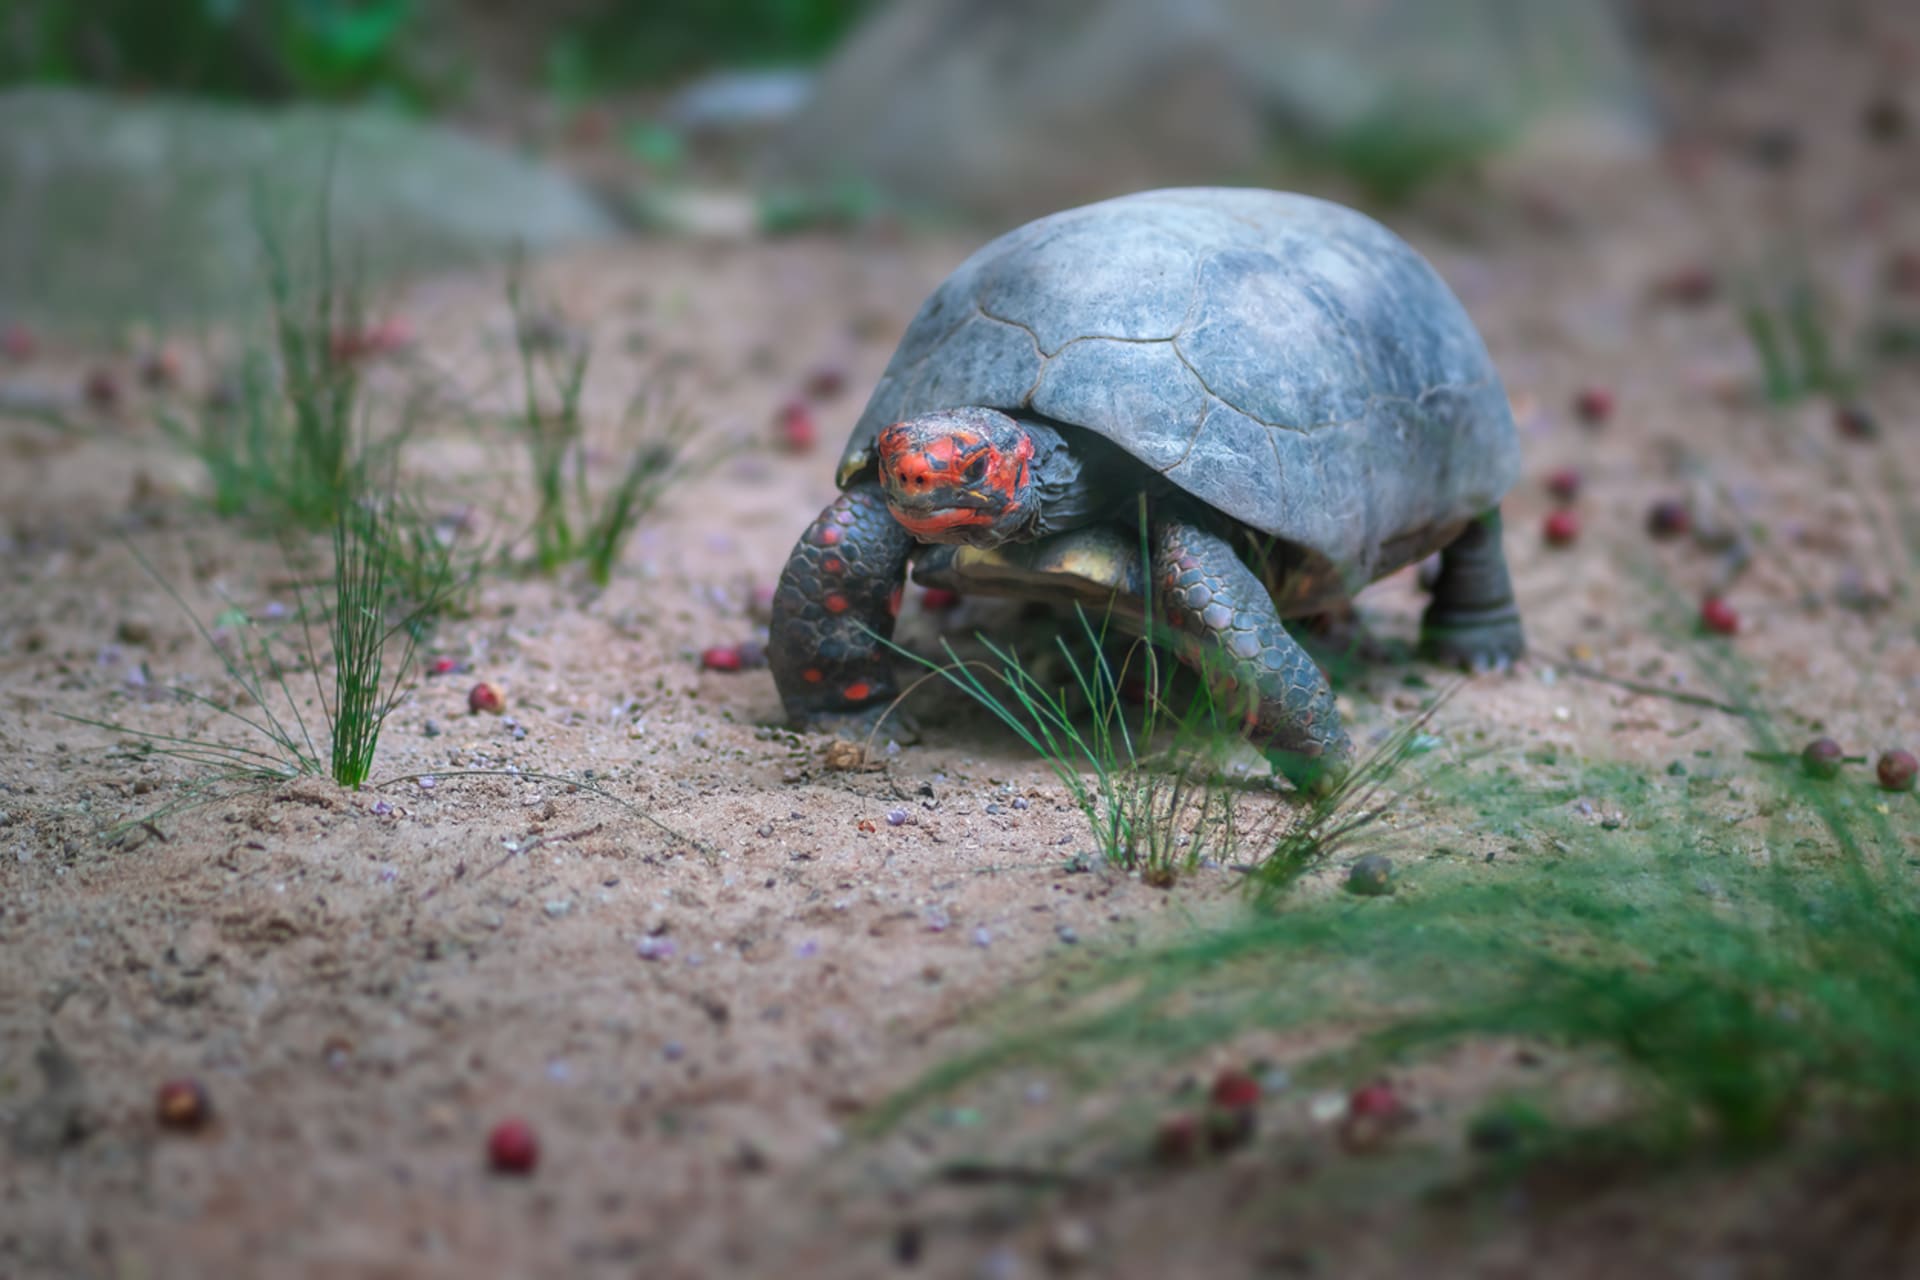 Červené zbarvení hlavy je pro želvy uhlířské (Chelonoidis carbonaria) typické